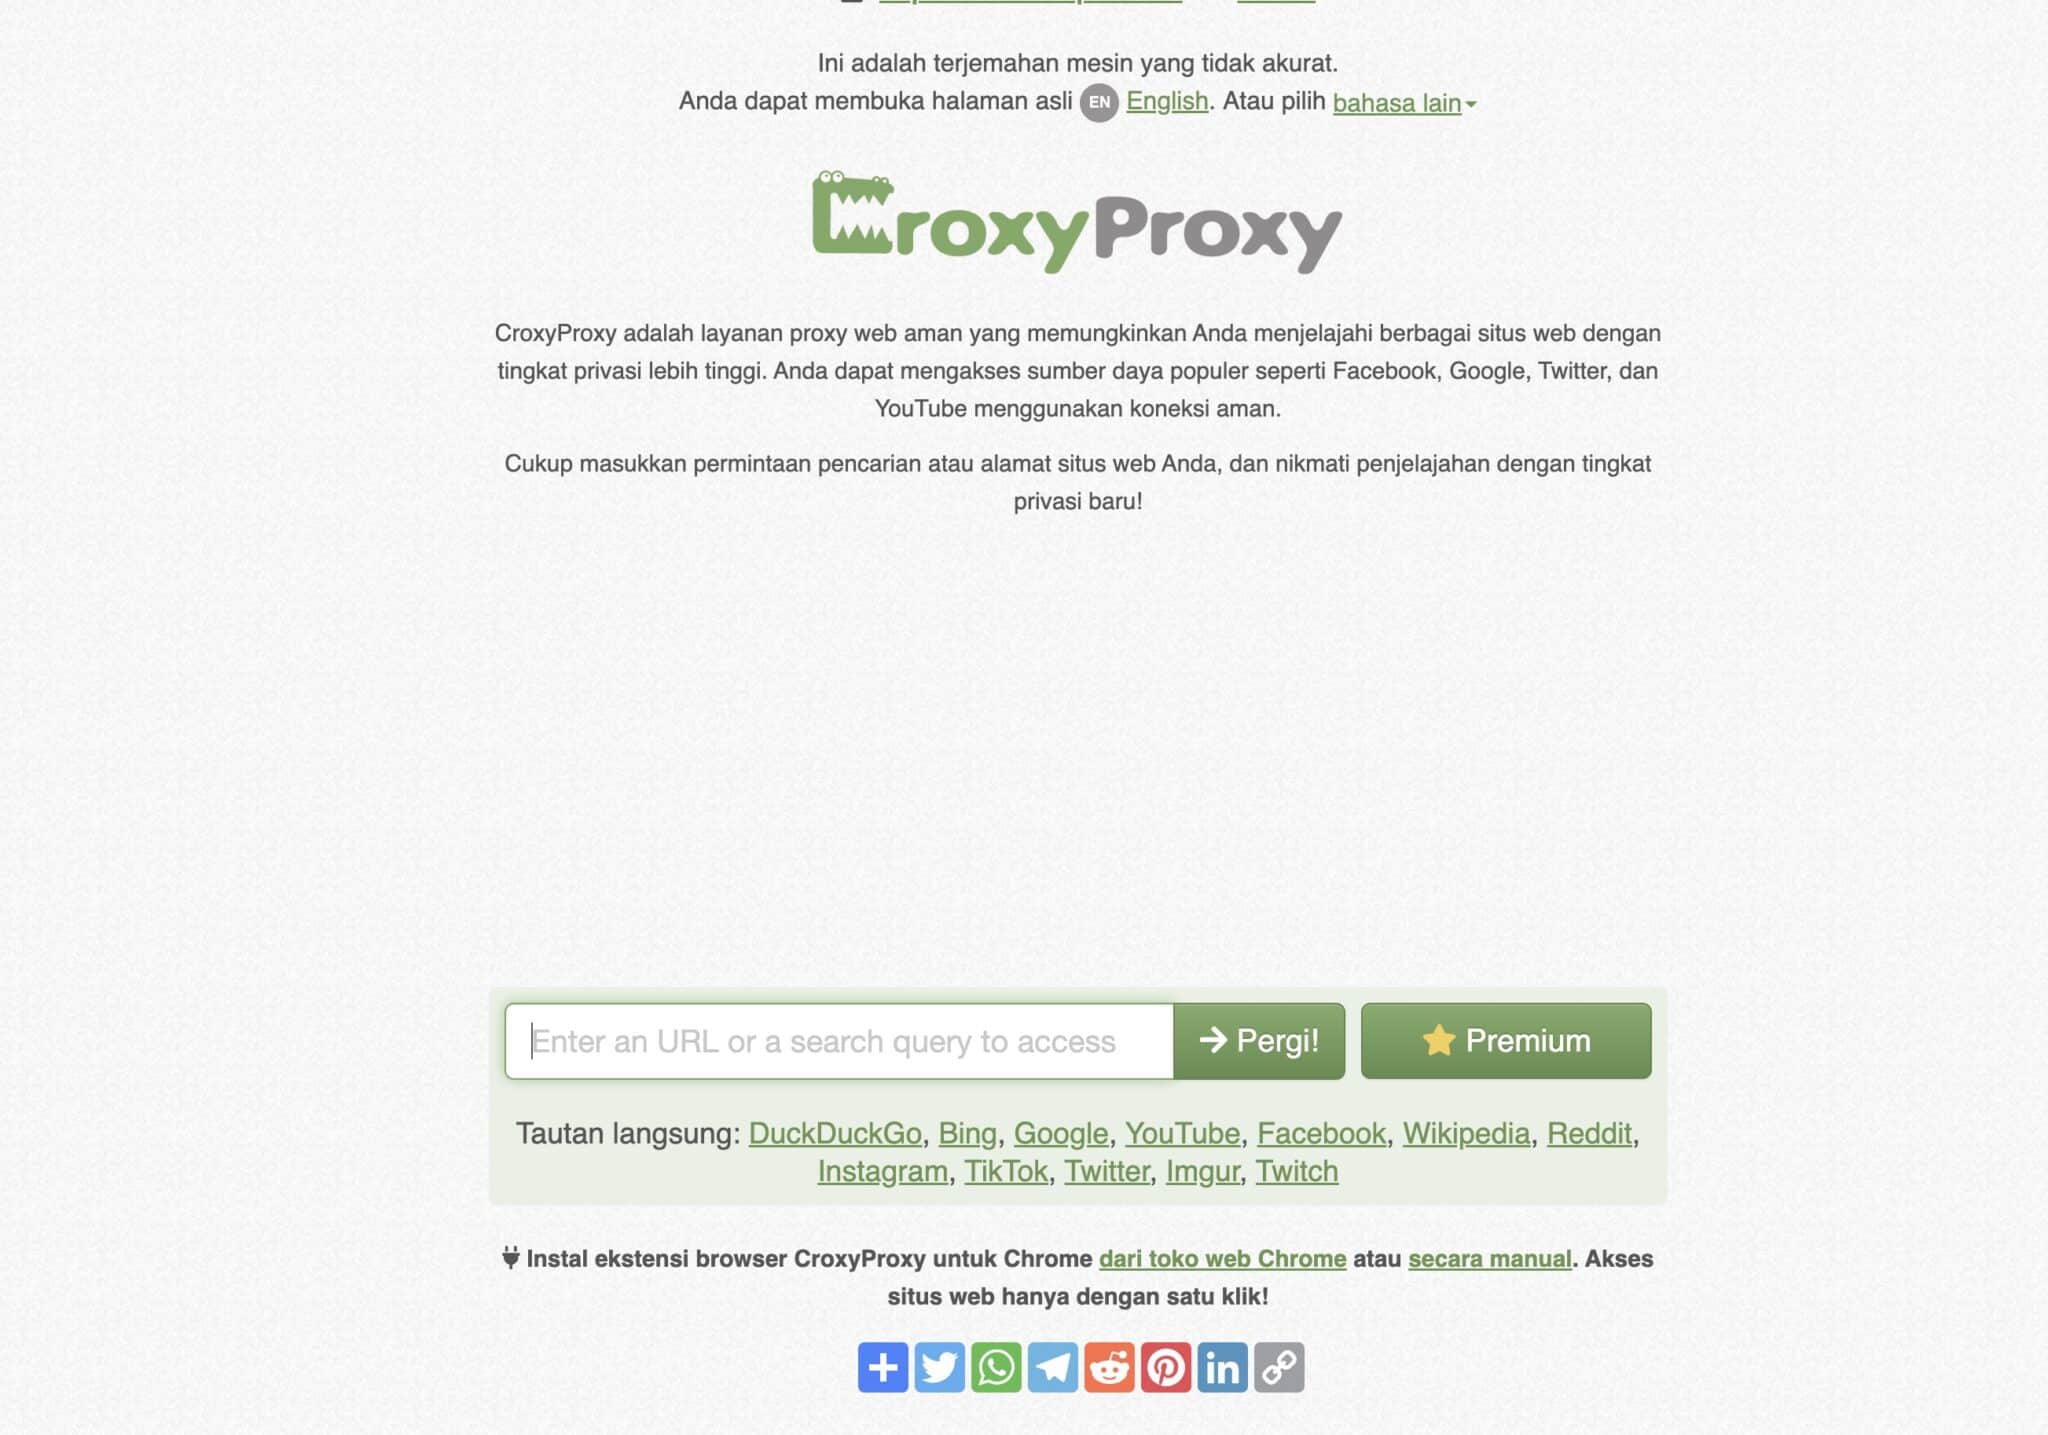 Các tính năng cơ bản của CroxyProxy: Mở khóa sức mạnh của Internet với CroxyProxy